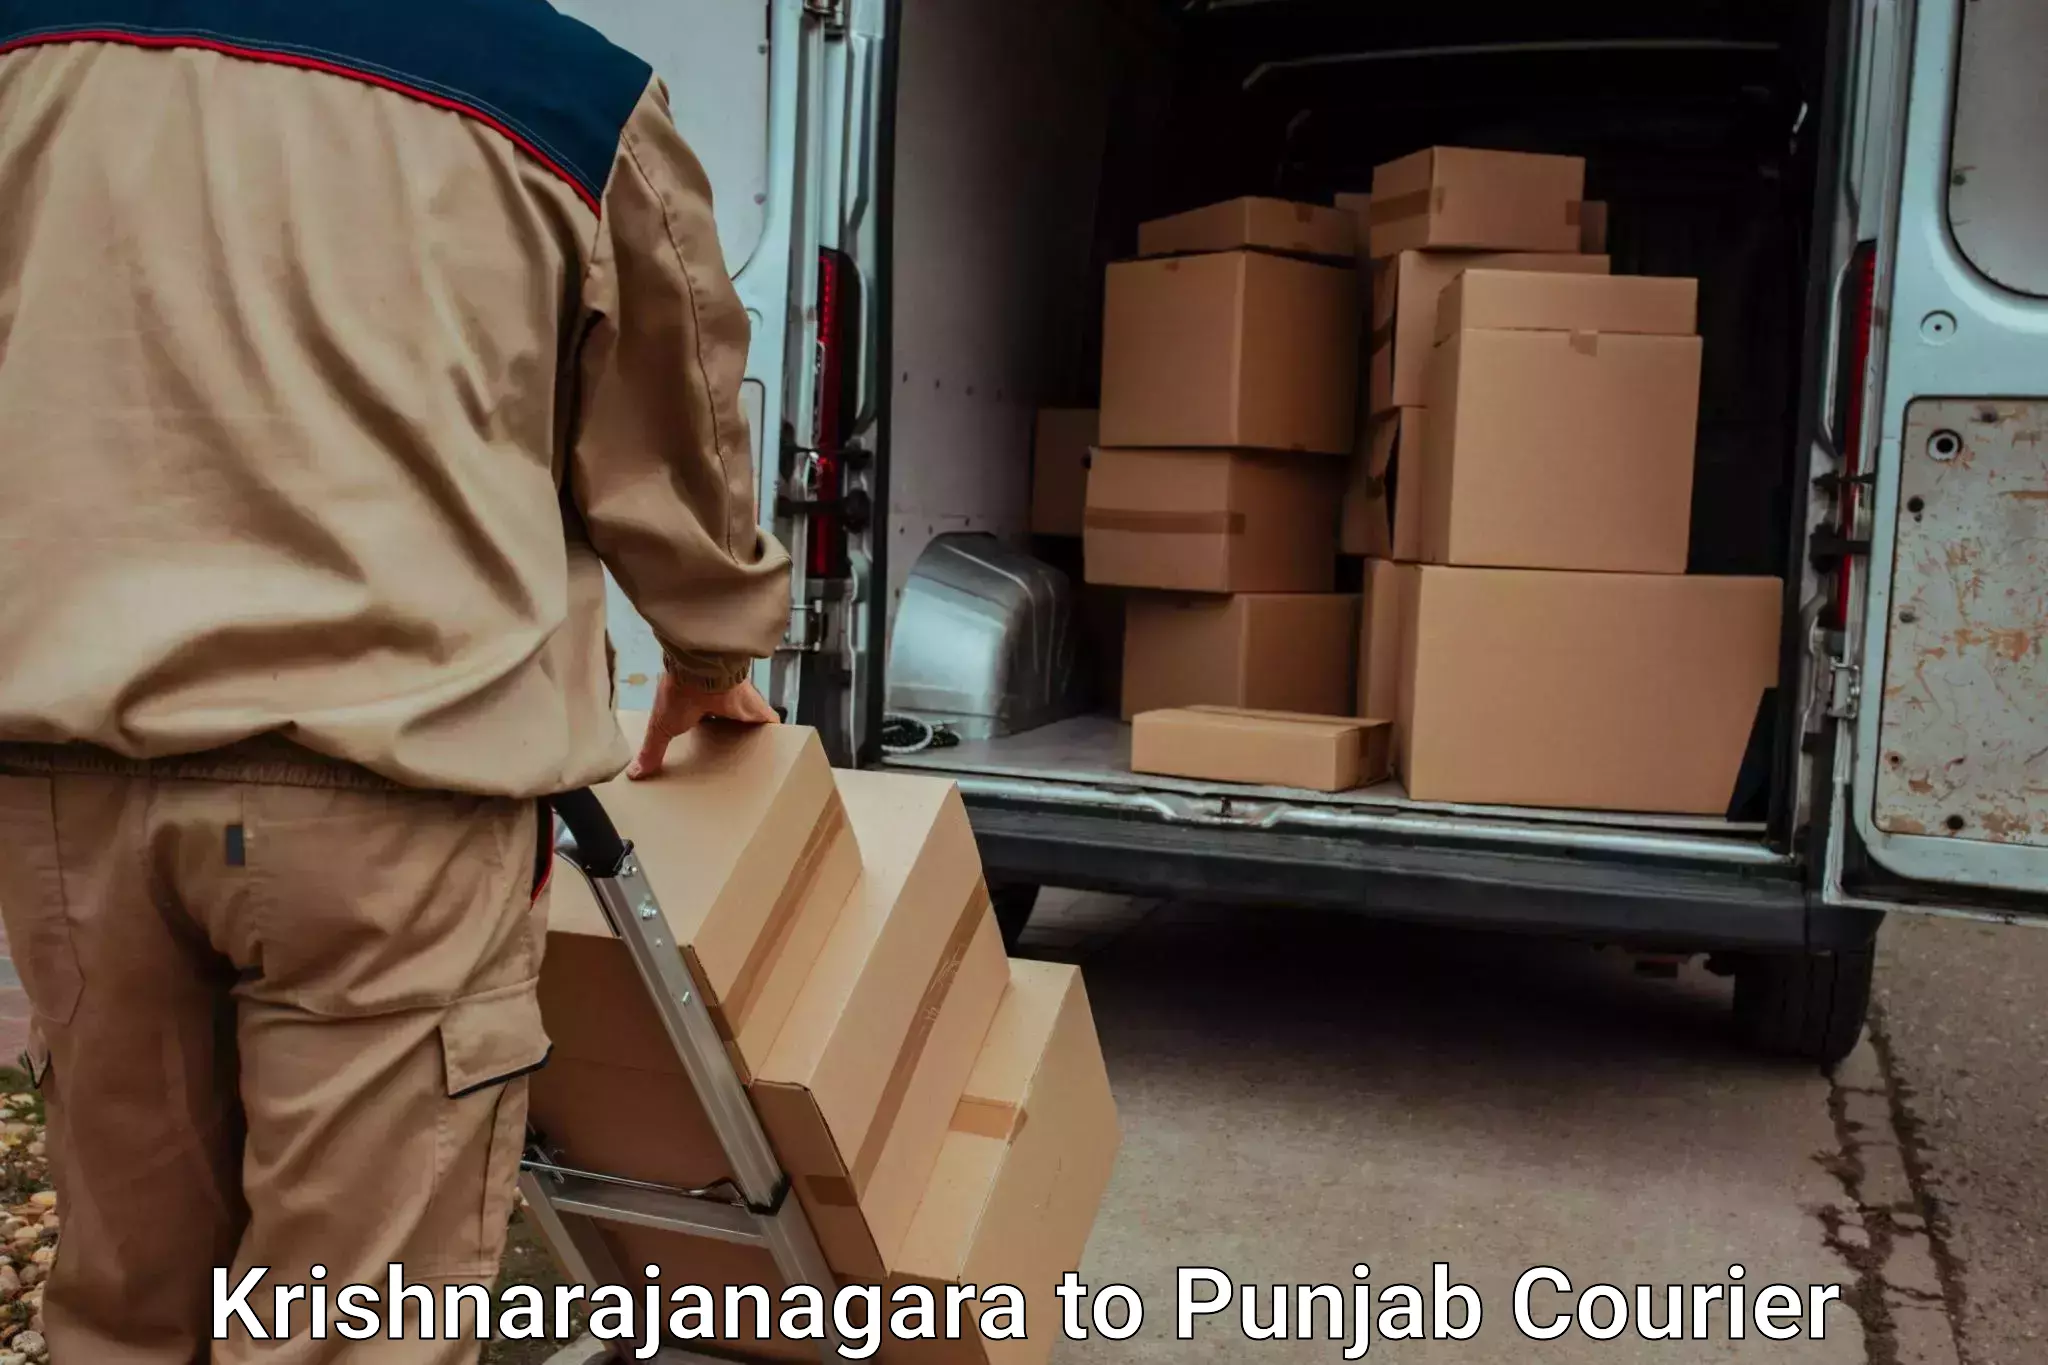 Moving and storage services Krishnarajanagara to Goindwal Sahib